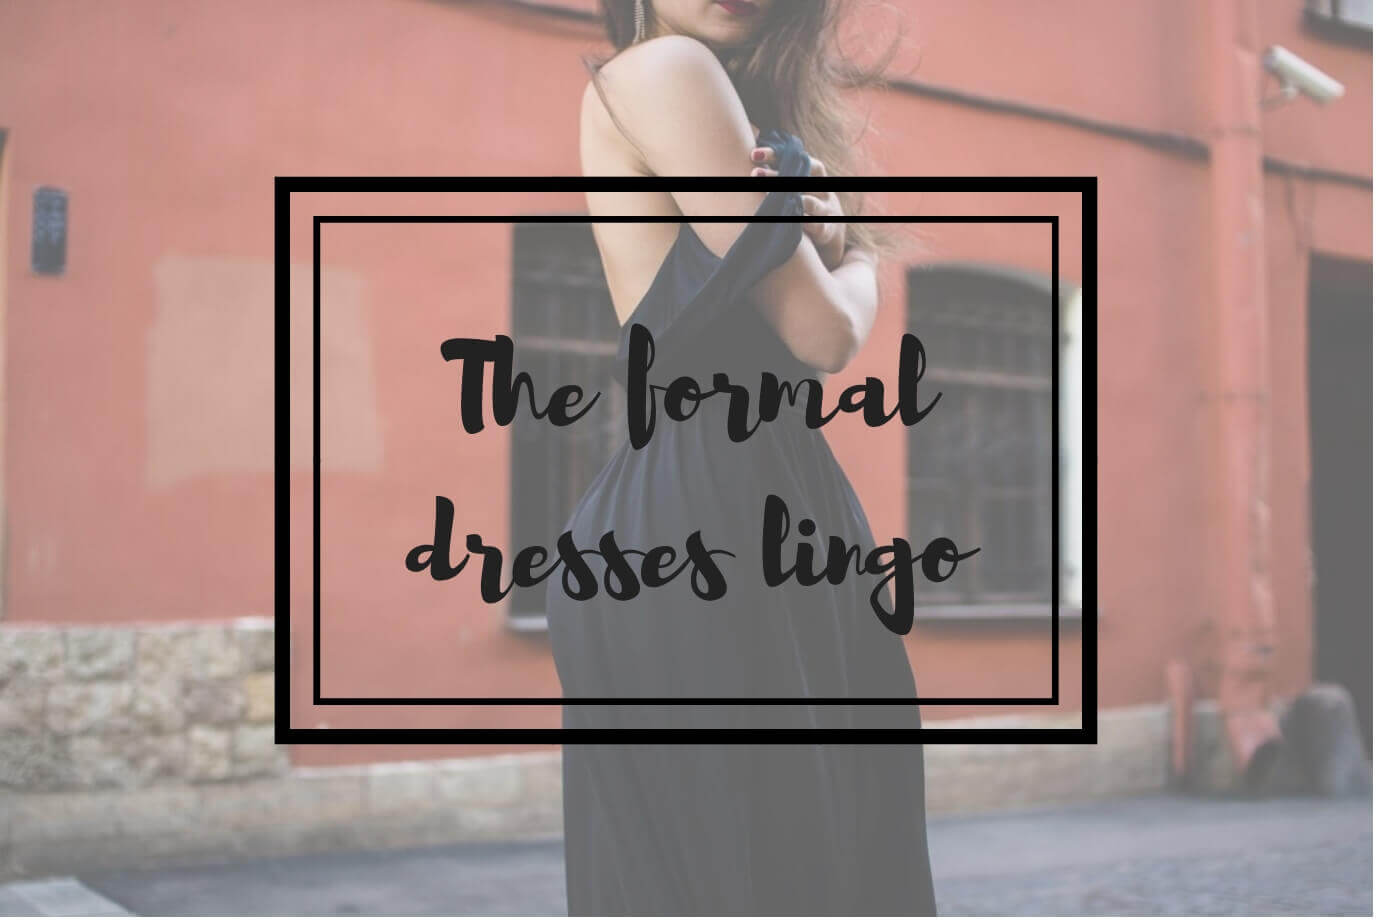 the formal dress lingo